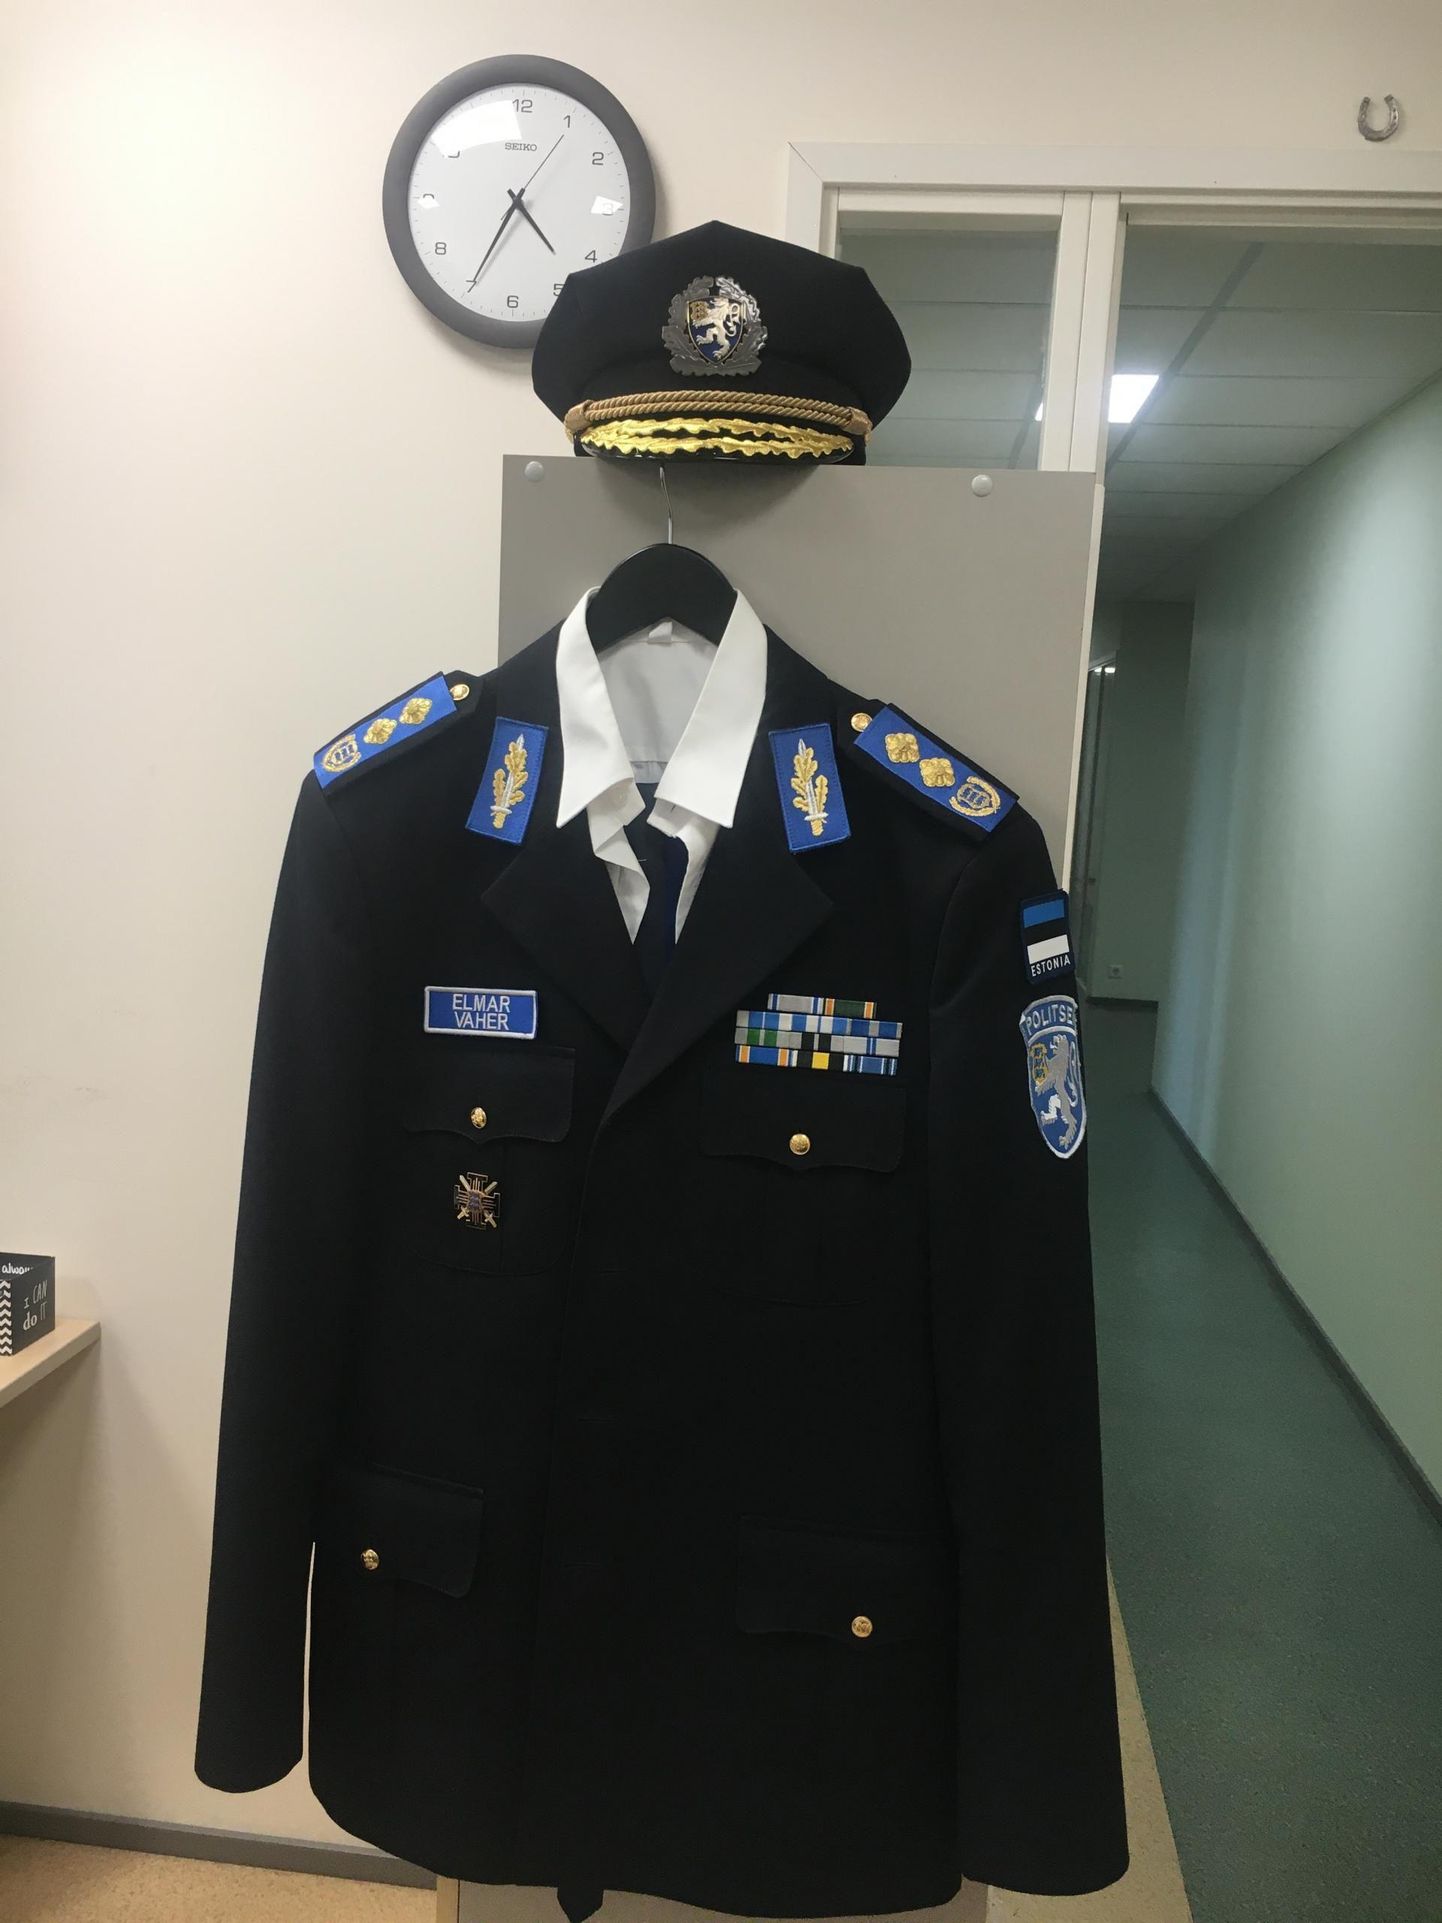 Politsei peadirektor Elmar Vaher annetas oma vormi politseimuuseumile eelmisel aastal.